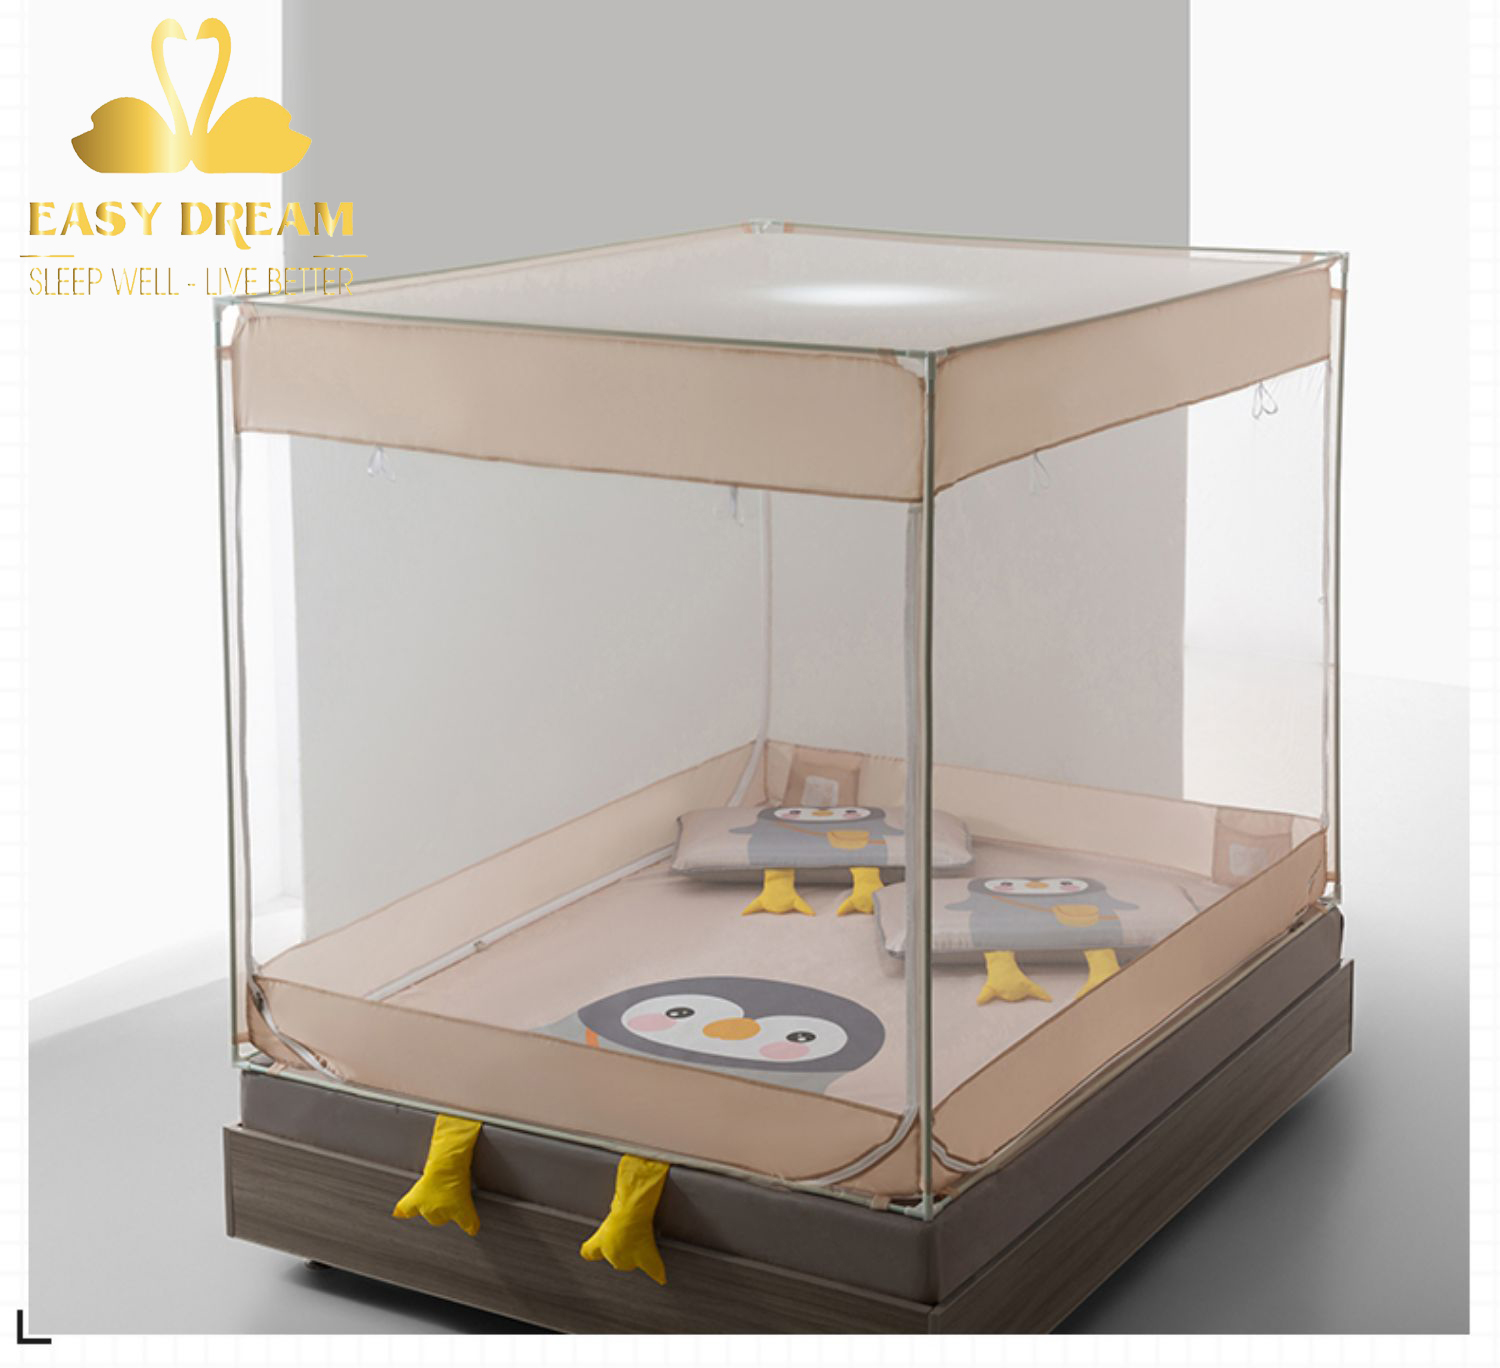 Màn khung vuông cao cấp EASY DREAM  gồm chiếu điều hòa mát lạnh - Mùng vuông nằm dưới dệm trên giường , dưới sàn nhà không cần giường cũng sử dụng được chống muỗi